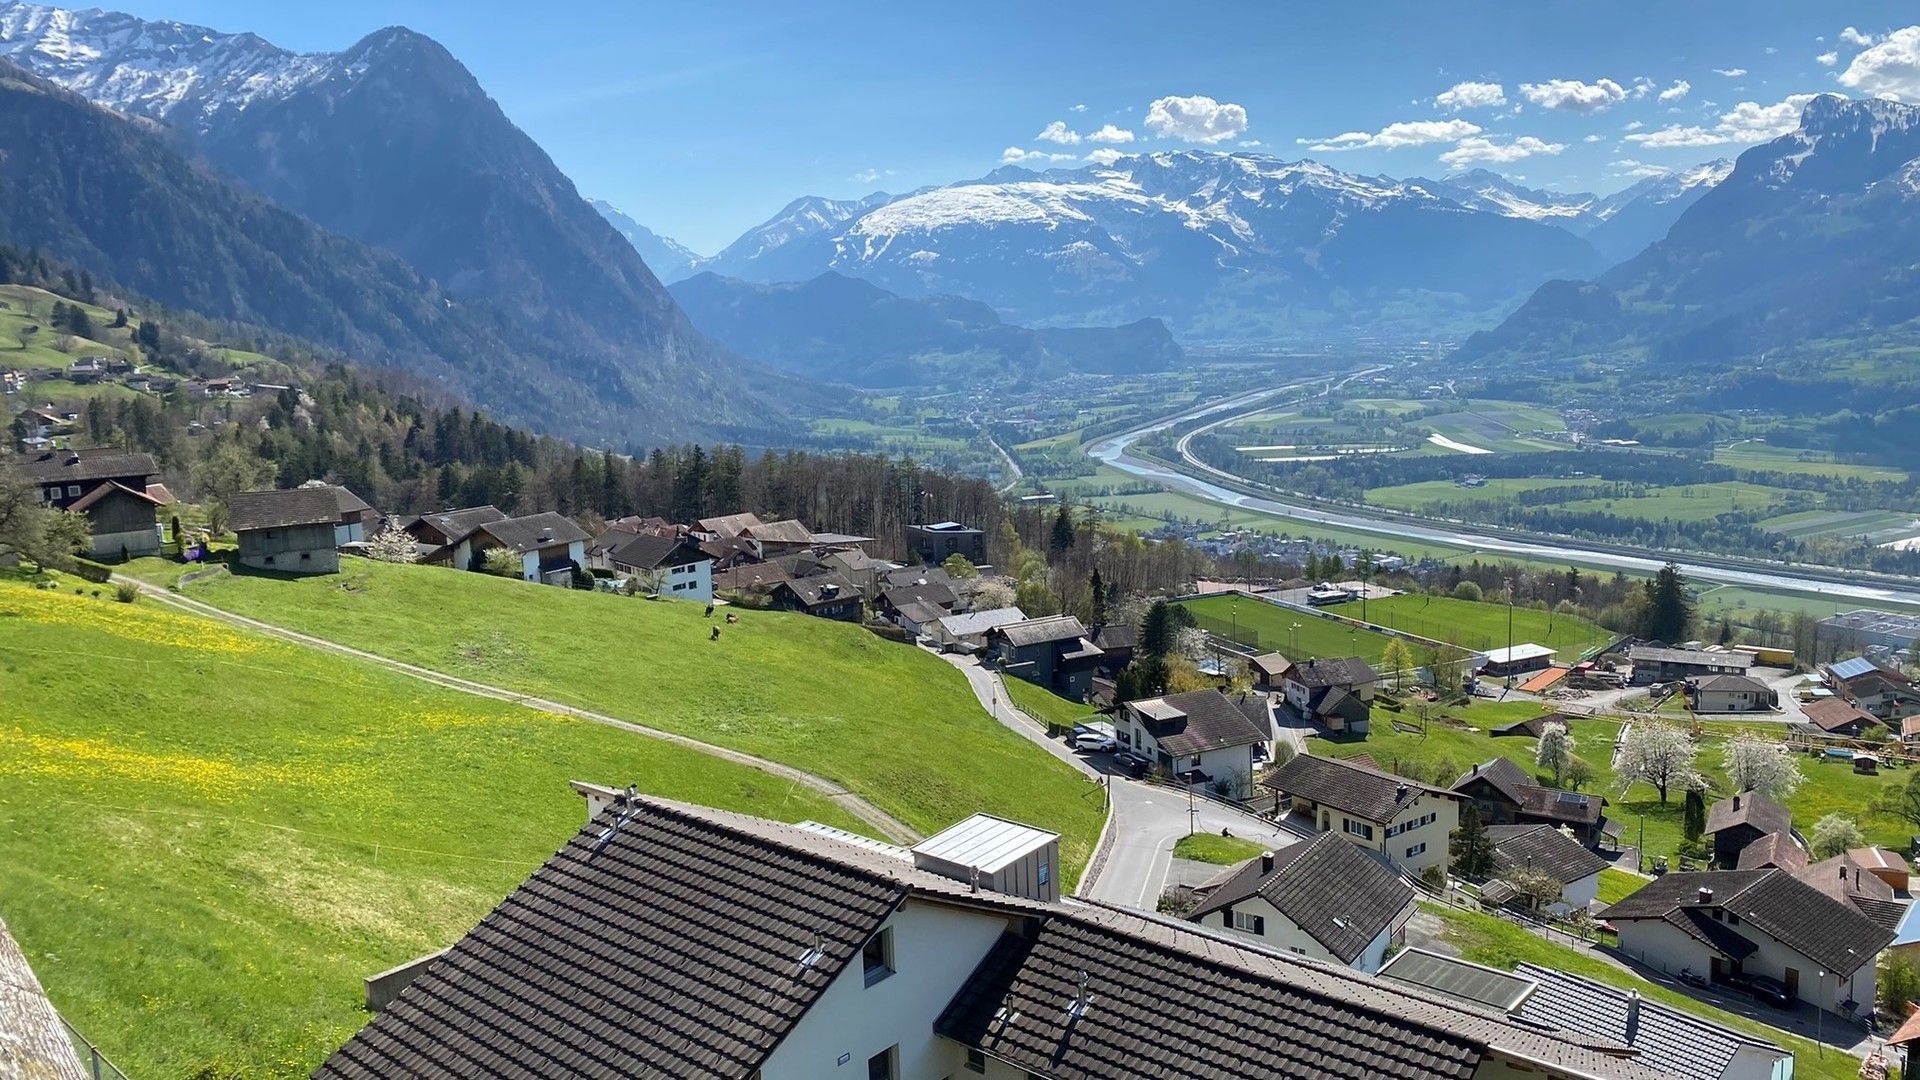 El país en si es muy bonito, vistas desde un mirador en Triesenberg. Lo que hay al otro lado de la autopista ya es Suiza y detrás de las montañas de la izquierda es Austria.